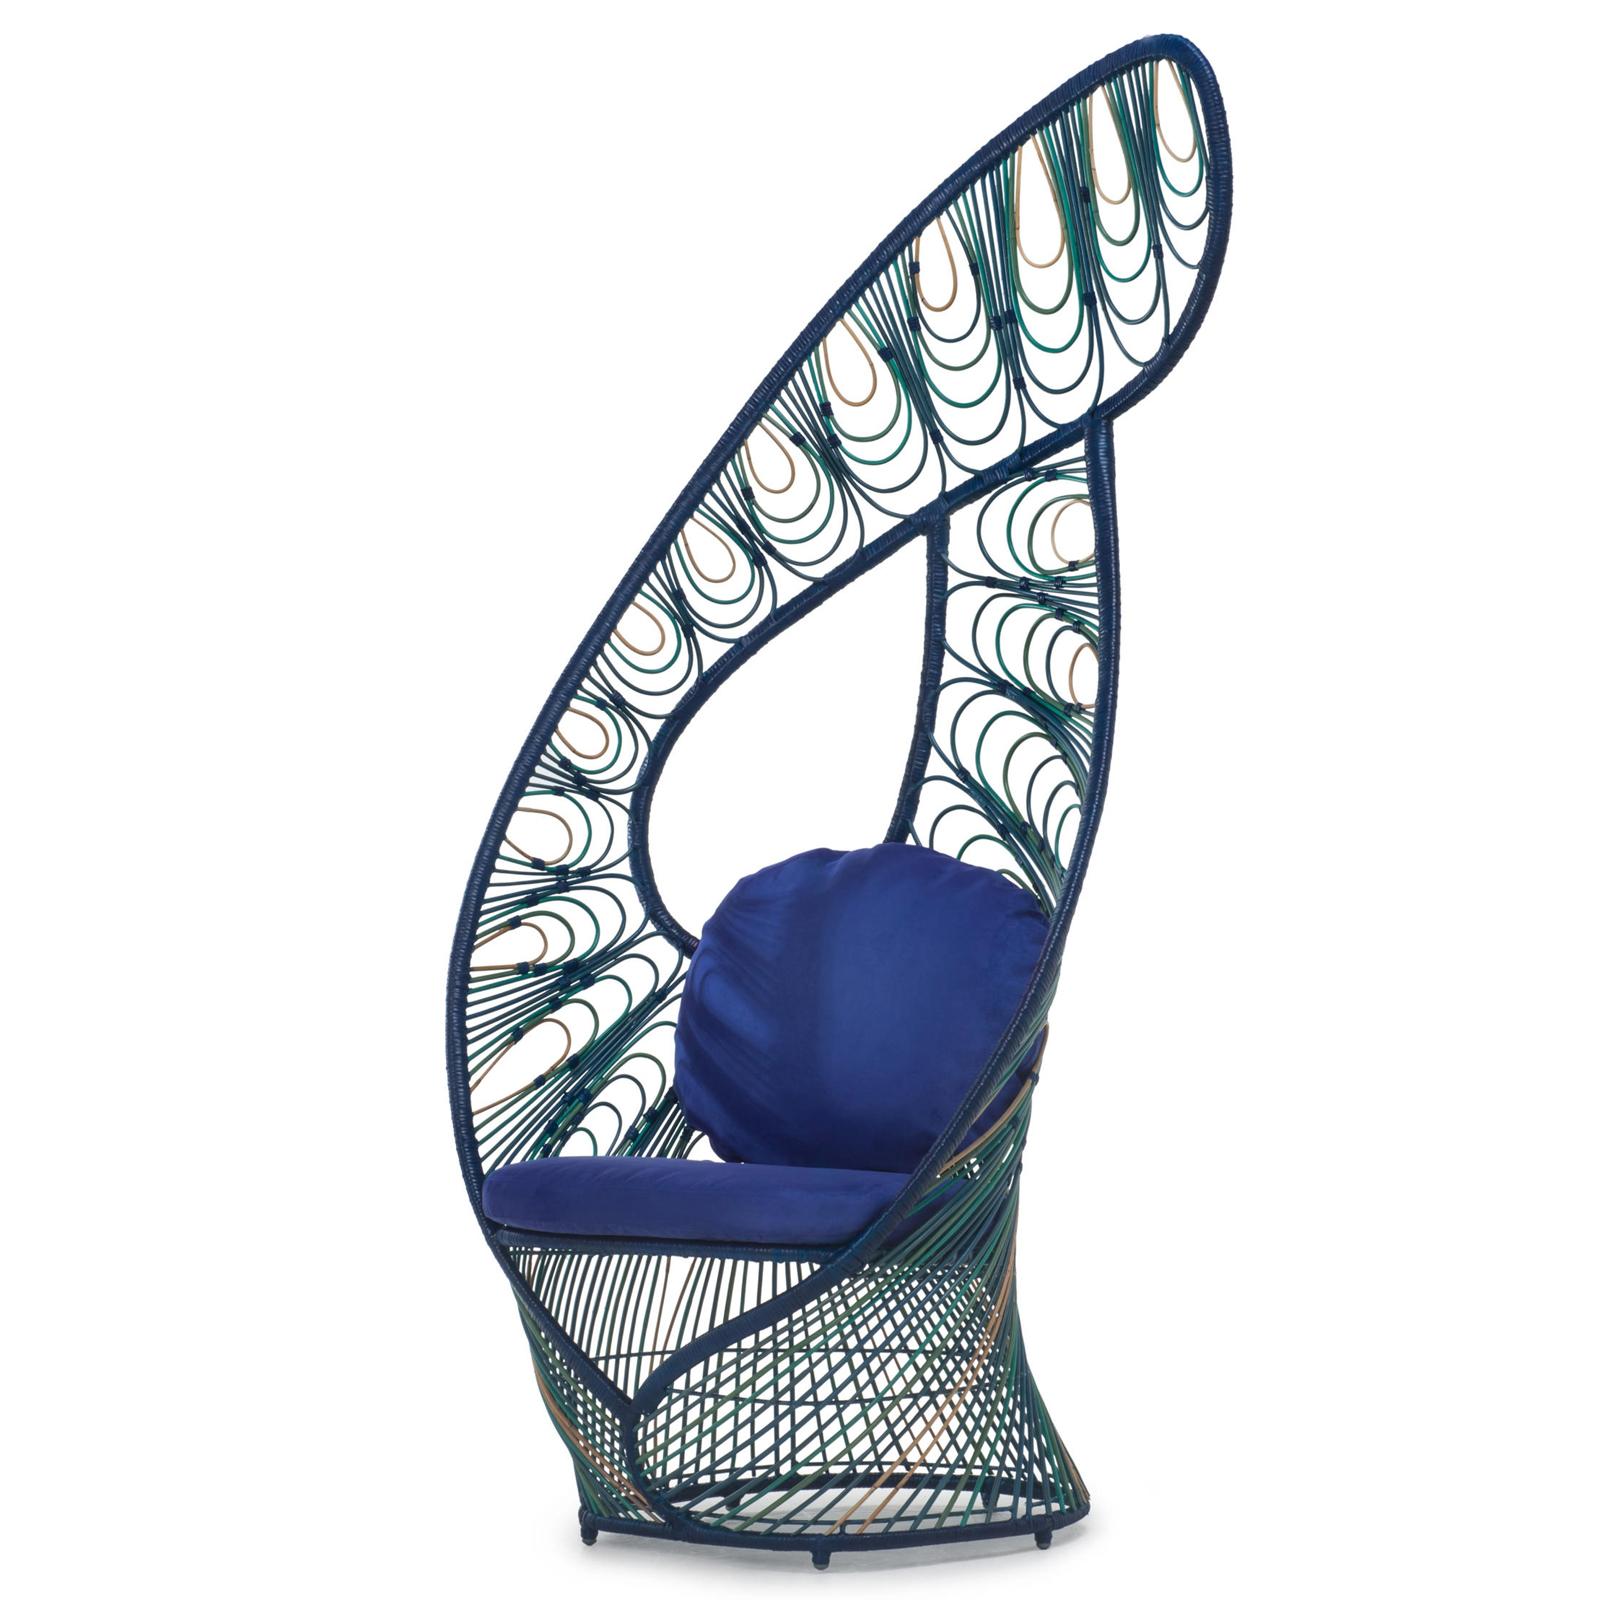 Stuhl Birdy aus natürlichem Rattan in 
blaue Oberfläche. Mit Rücken- und Sitzkissen
enthalten.
Auch in naturbelassenem Rattan erhältlich.
Vorlaufzeit Produktion, wenn auf Lager 2-3 Wochen,
wenn nicht auf Lager 15-16 Wochen.